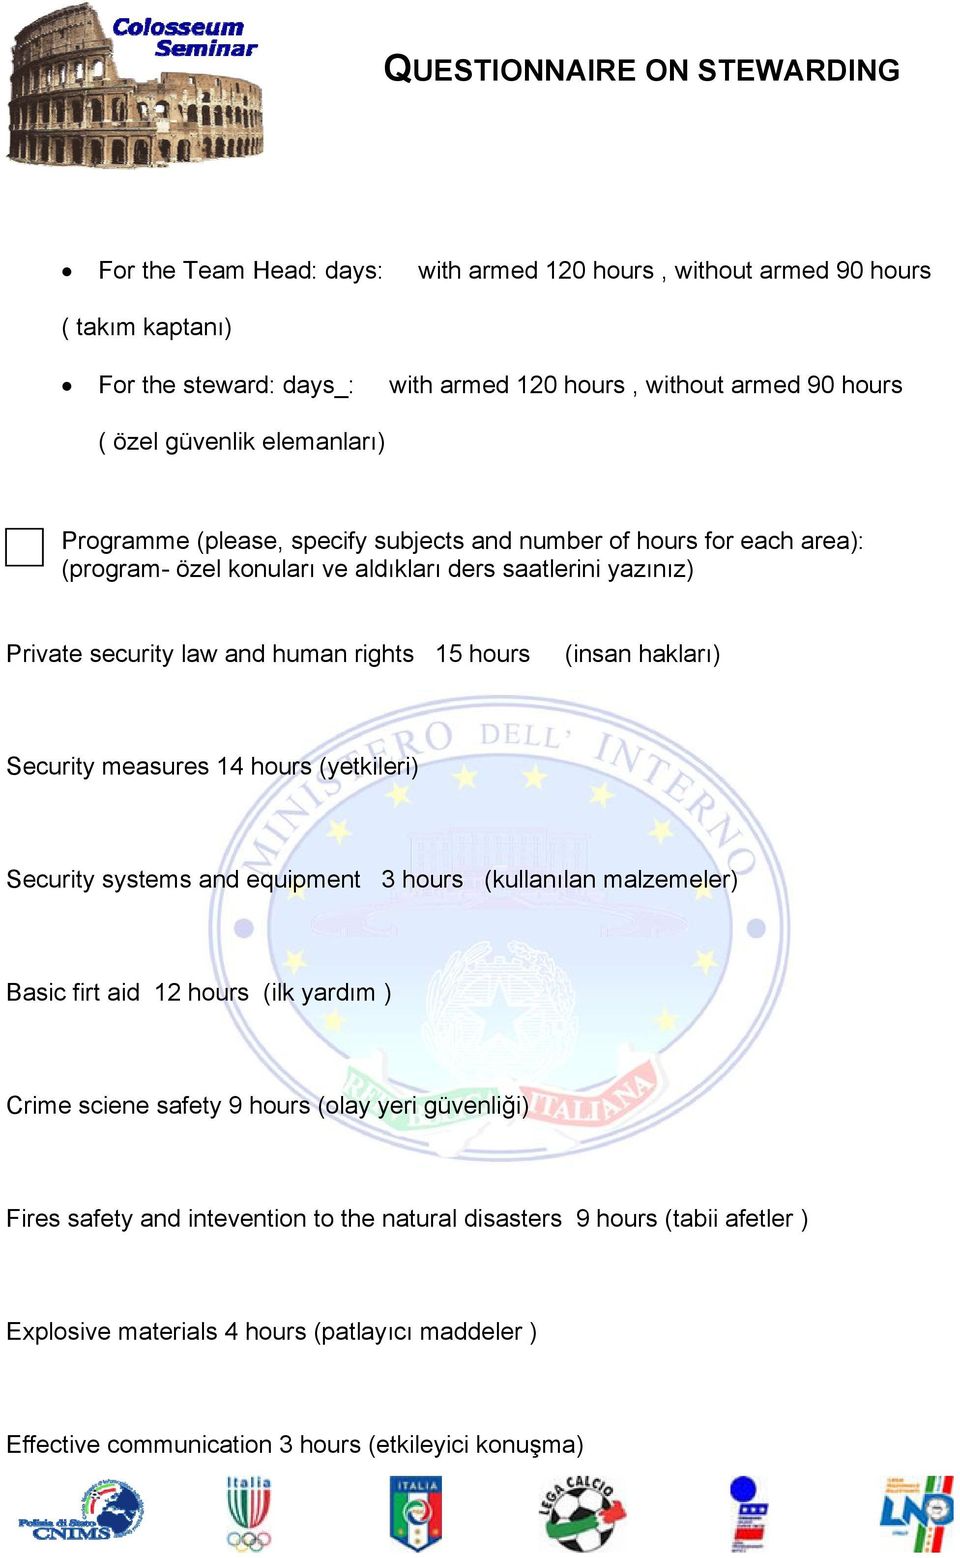 hakları) Security measures 14 hours (yetkileri) Security systems and equipment 3 hours (kullanılan malzemeler) Basic firt aid 12 hours (ilk yardım ) Crime sciene safety 9 hours (olay yeri